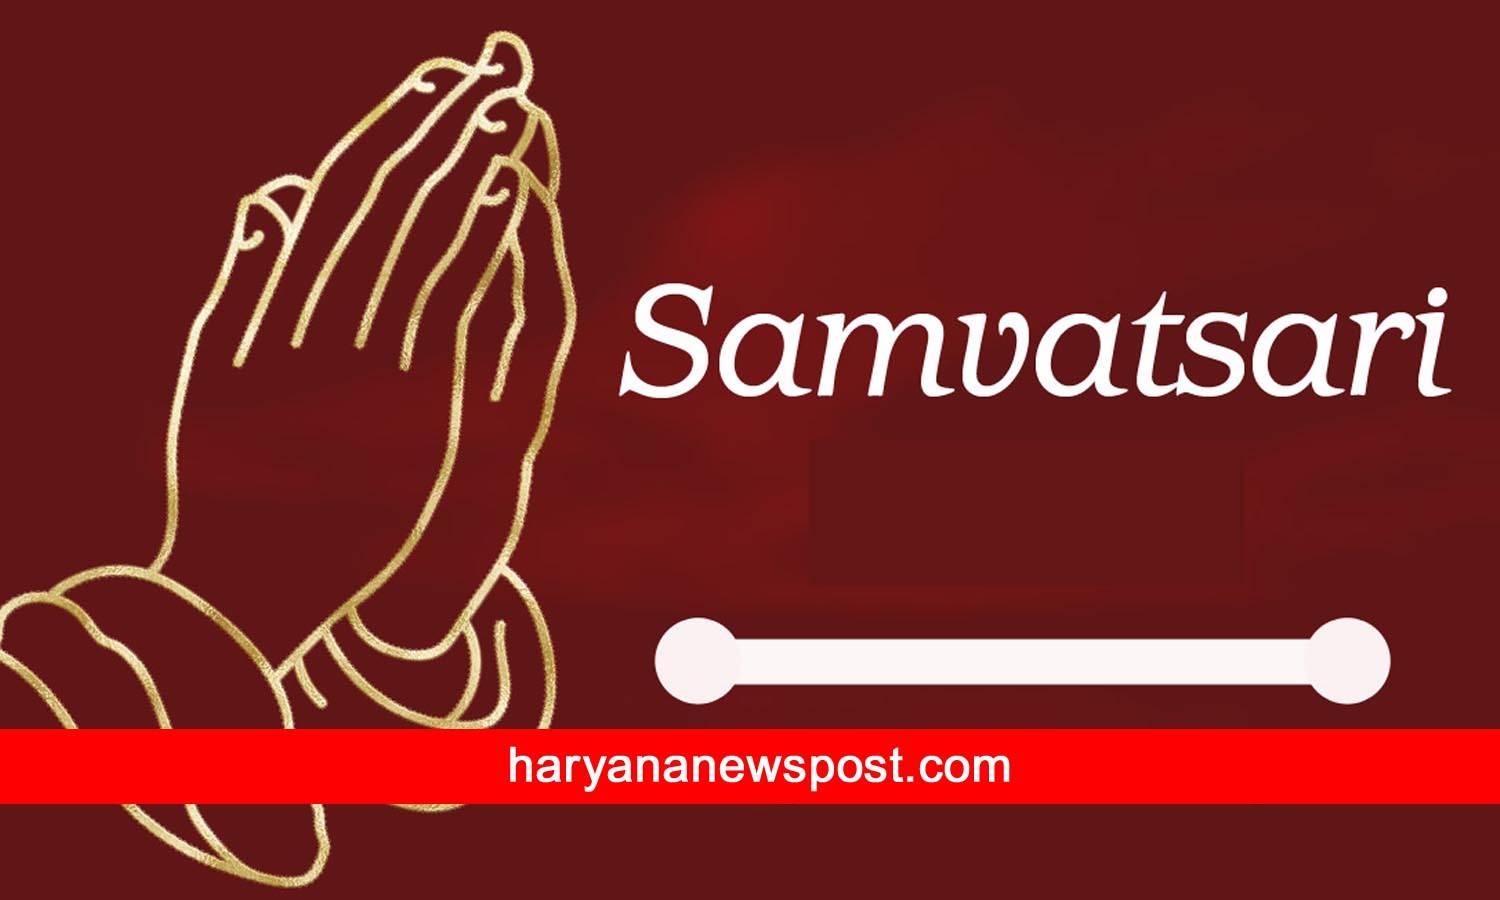 Samvatsari images wishes